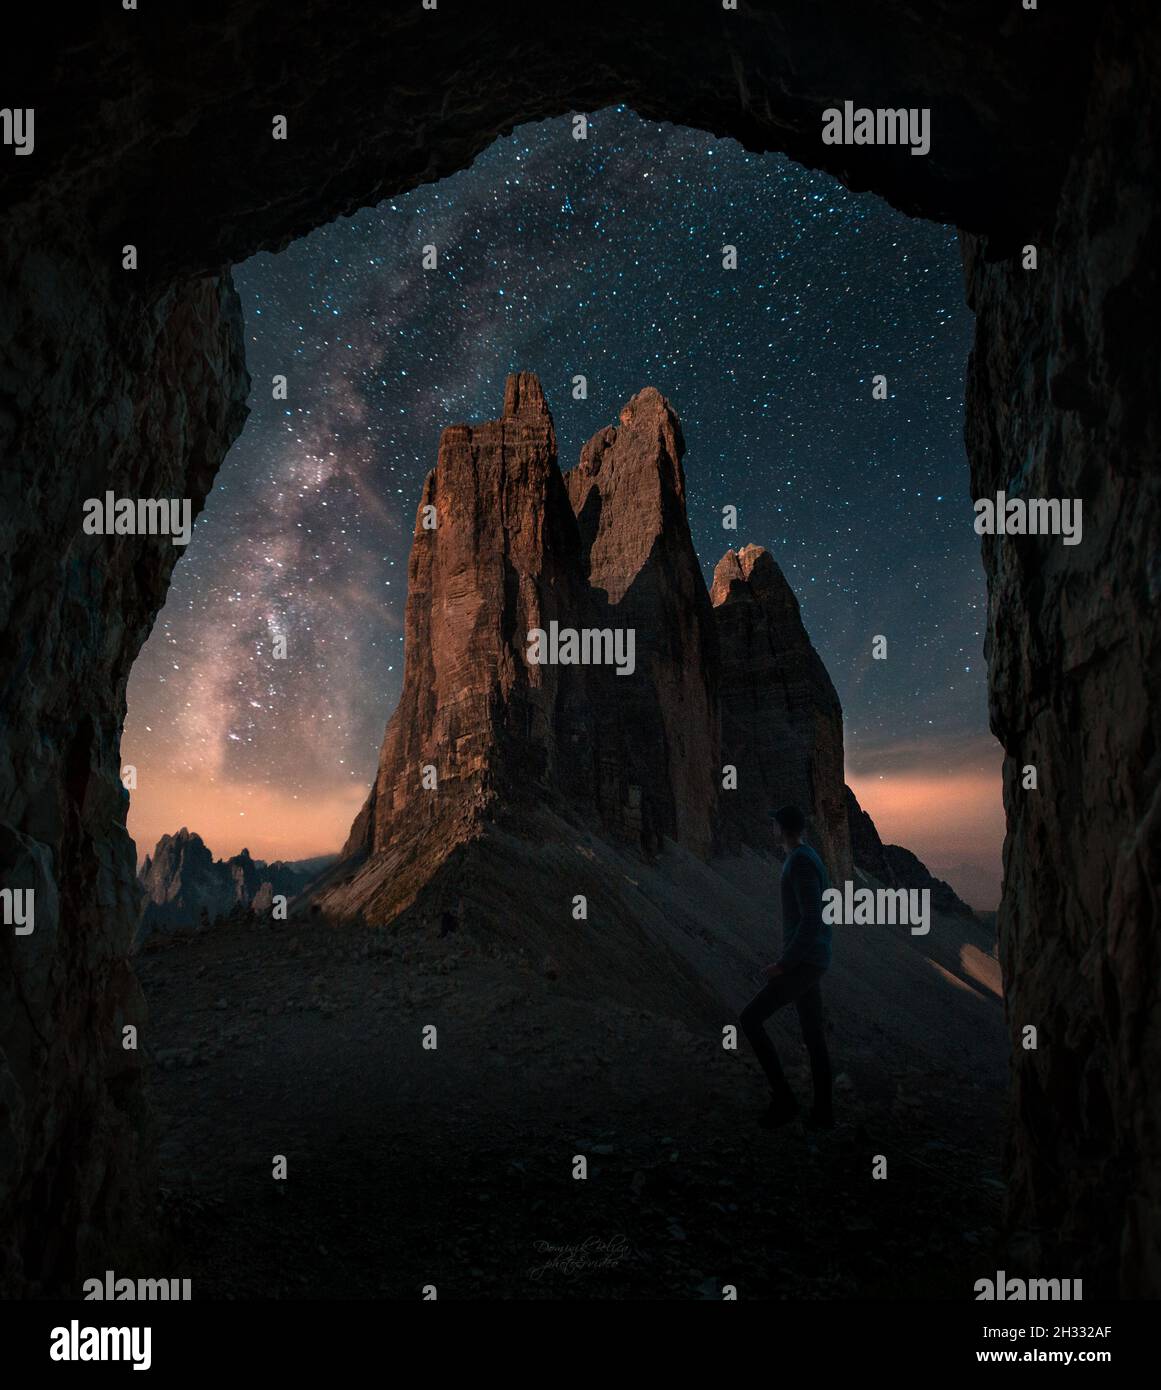 Les gars, les personnes sont debout en face des montagnes Tre Cime di Lavaredo dans les Dolomites, Italie.Photographie de nuit avec des étoiles et des laiteuses Banque D'Images